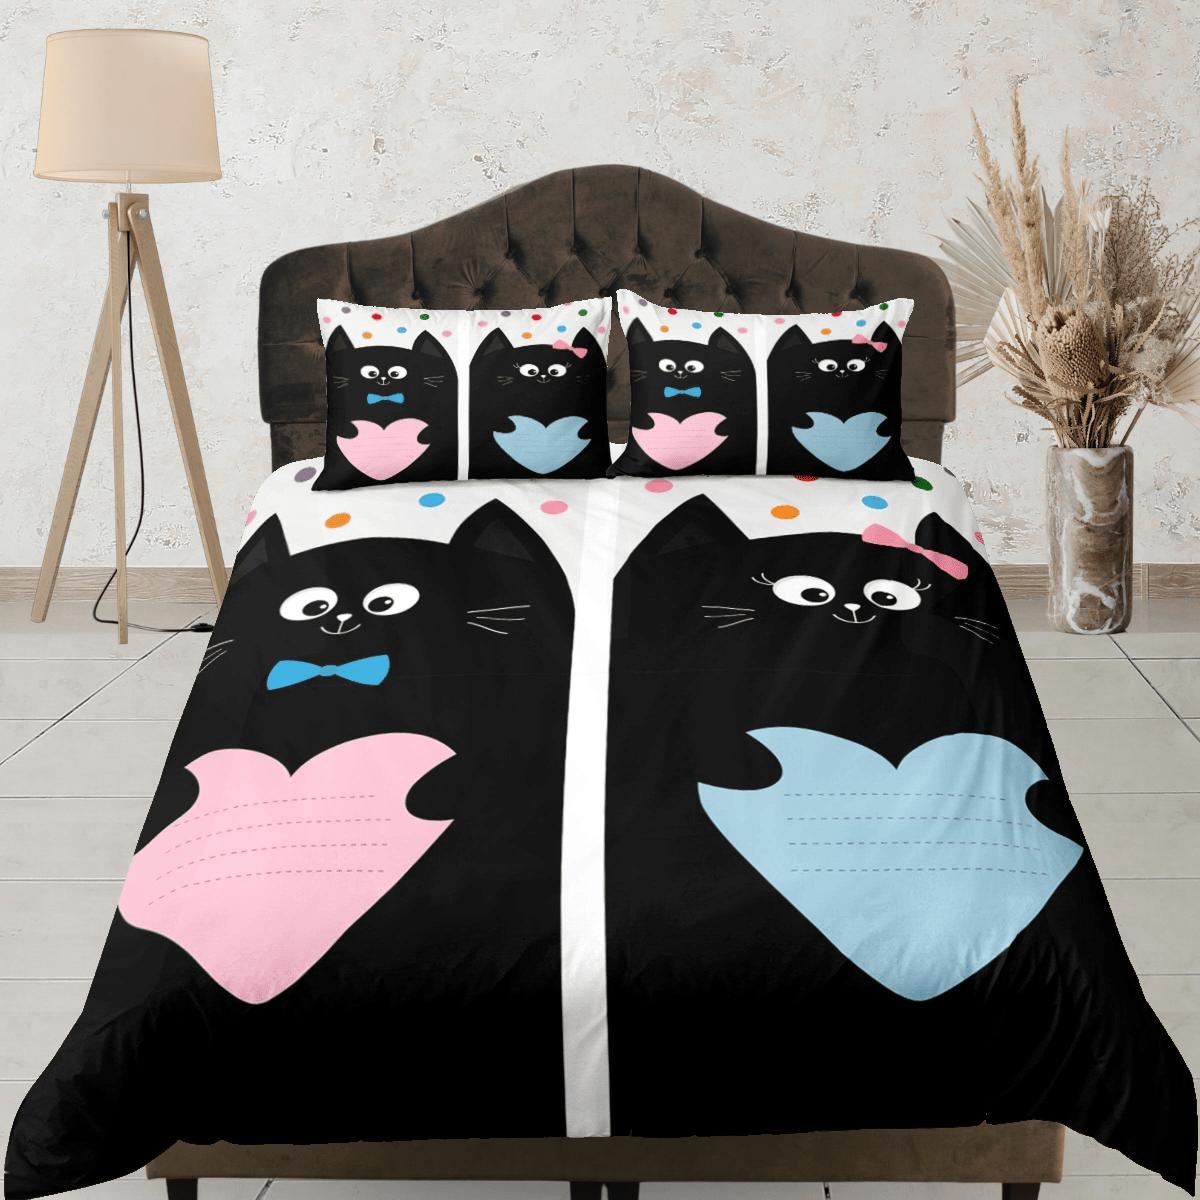 daintyduvet Cute couple cat bedding, toddler bedding, kids duvet cover set, gift for cat lovers, baby bedding, baby shower gift, bedding for couples